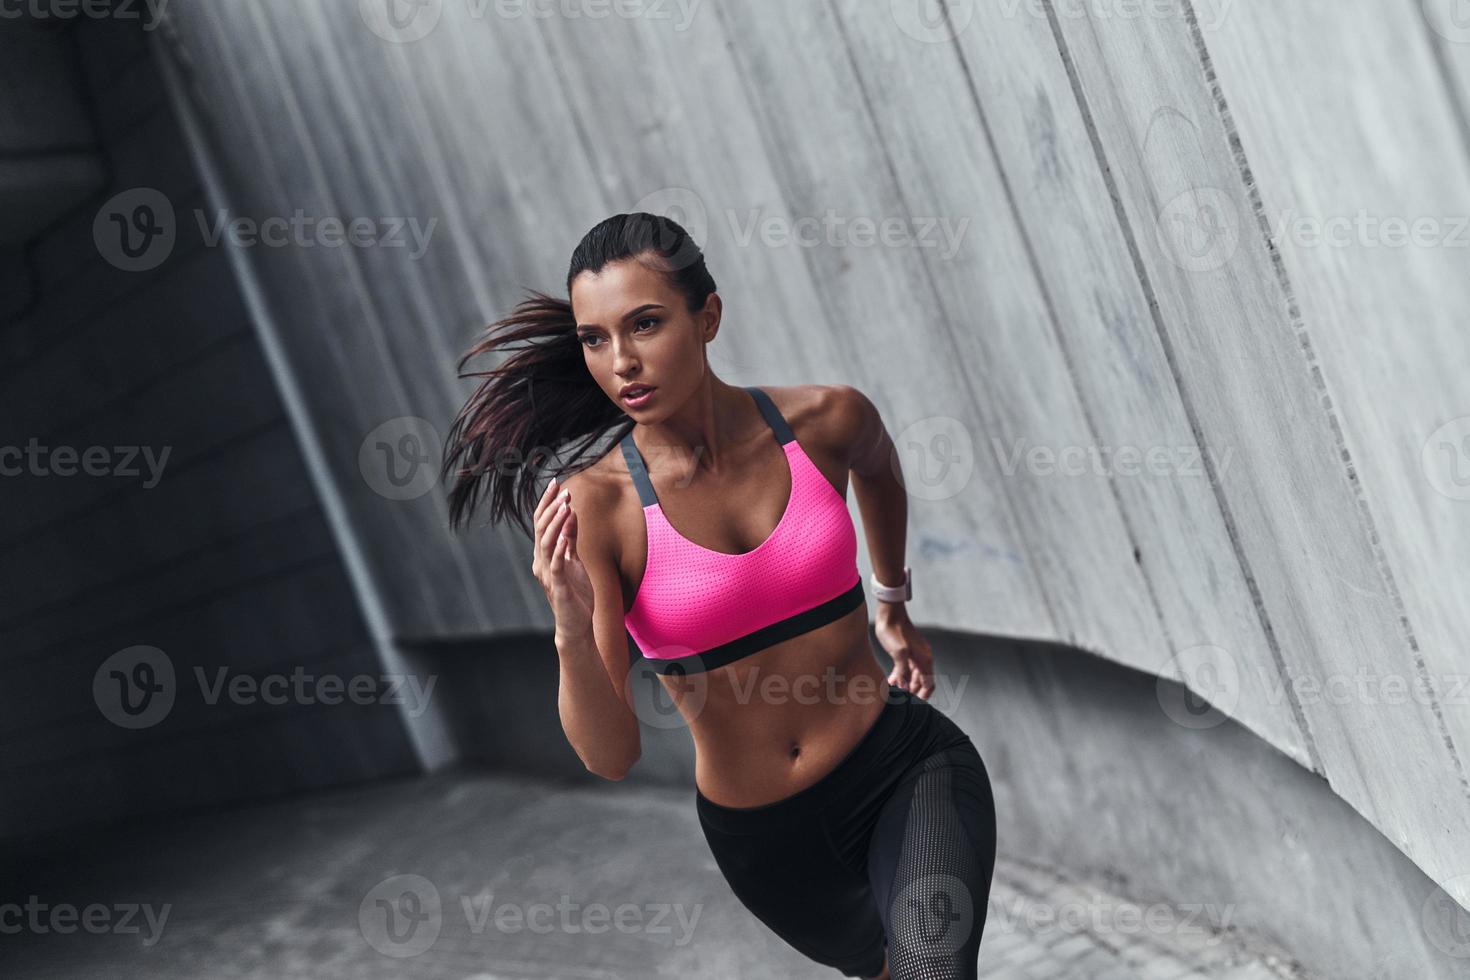 mejor cardio nunca. mujer joven moderna en ropa deportiva corriendo mientras hace ejercicio al aire libre foto